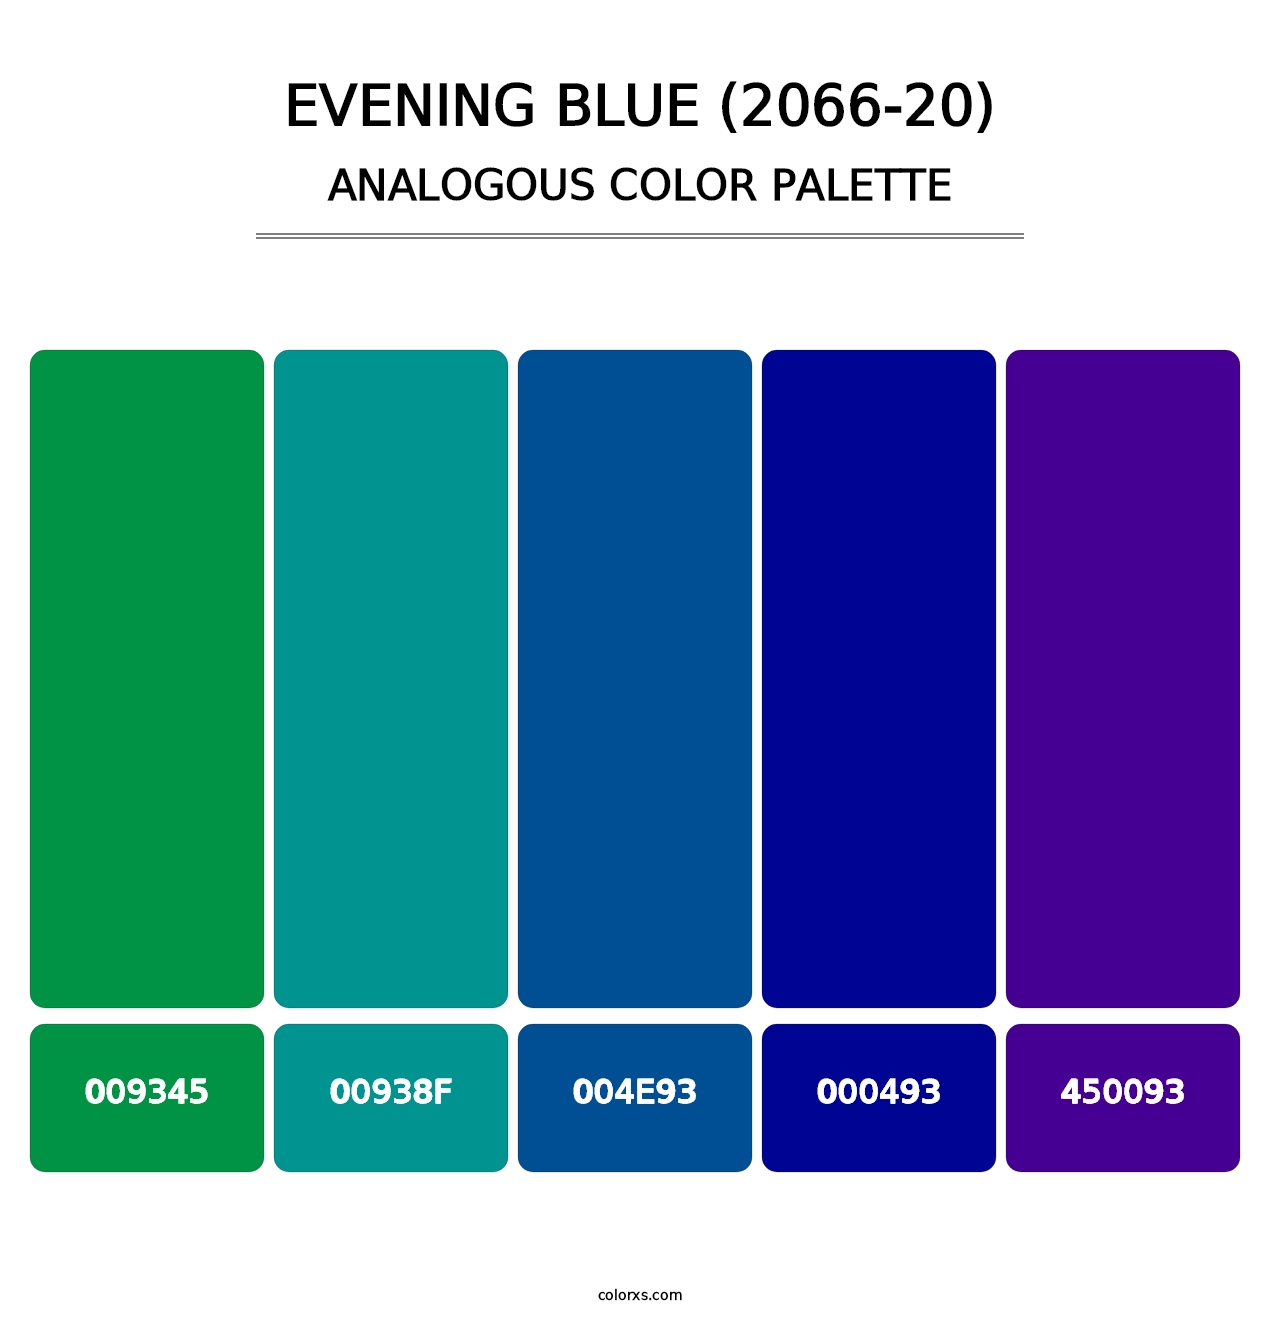 Evening Blue (2066-20) - Analogous Color Palette